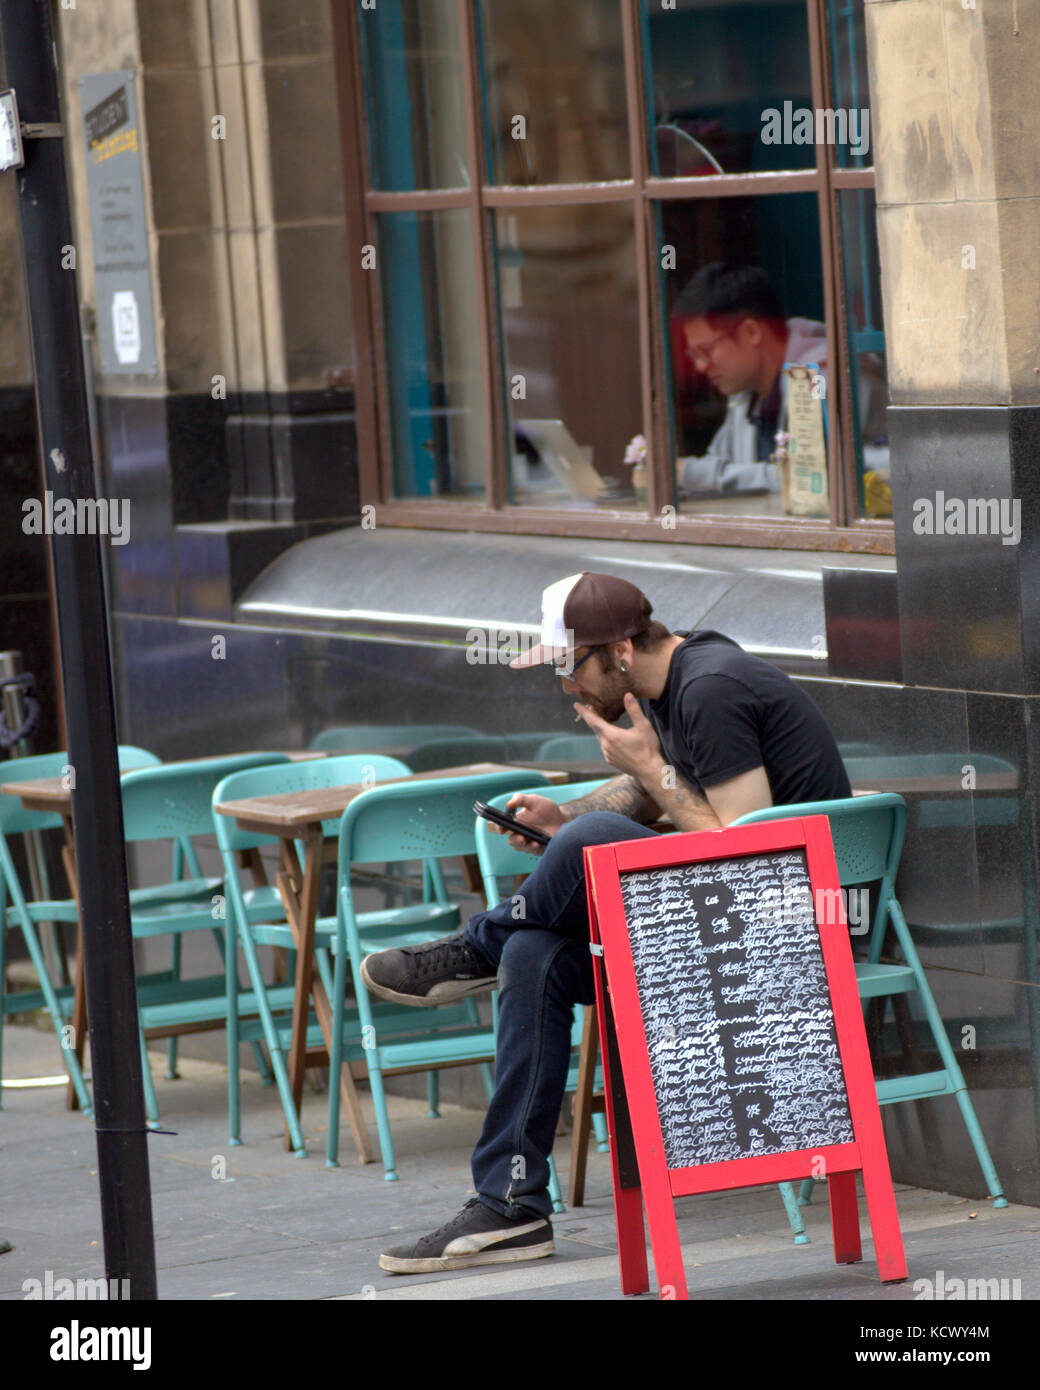 Bier schild Glasgow cafe bar außerhalb von Tabellen mittels Smartphone rauchen Zigarette Stockfoto